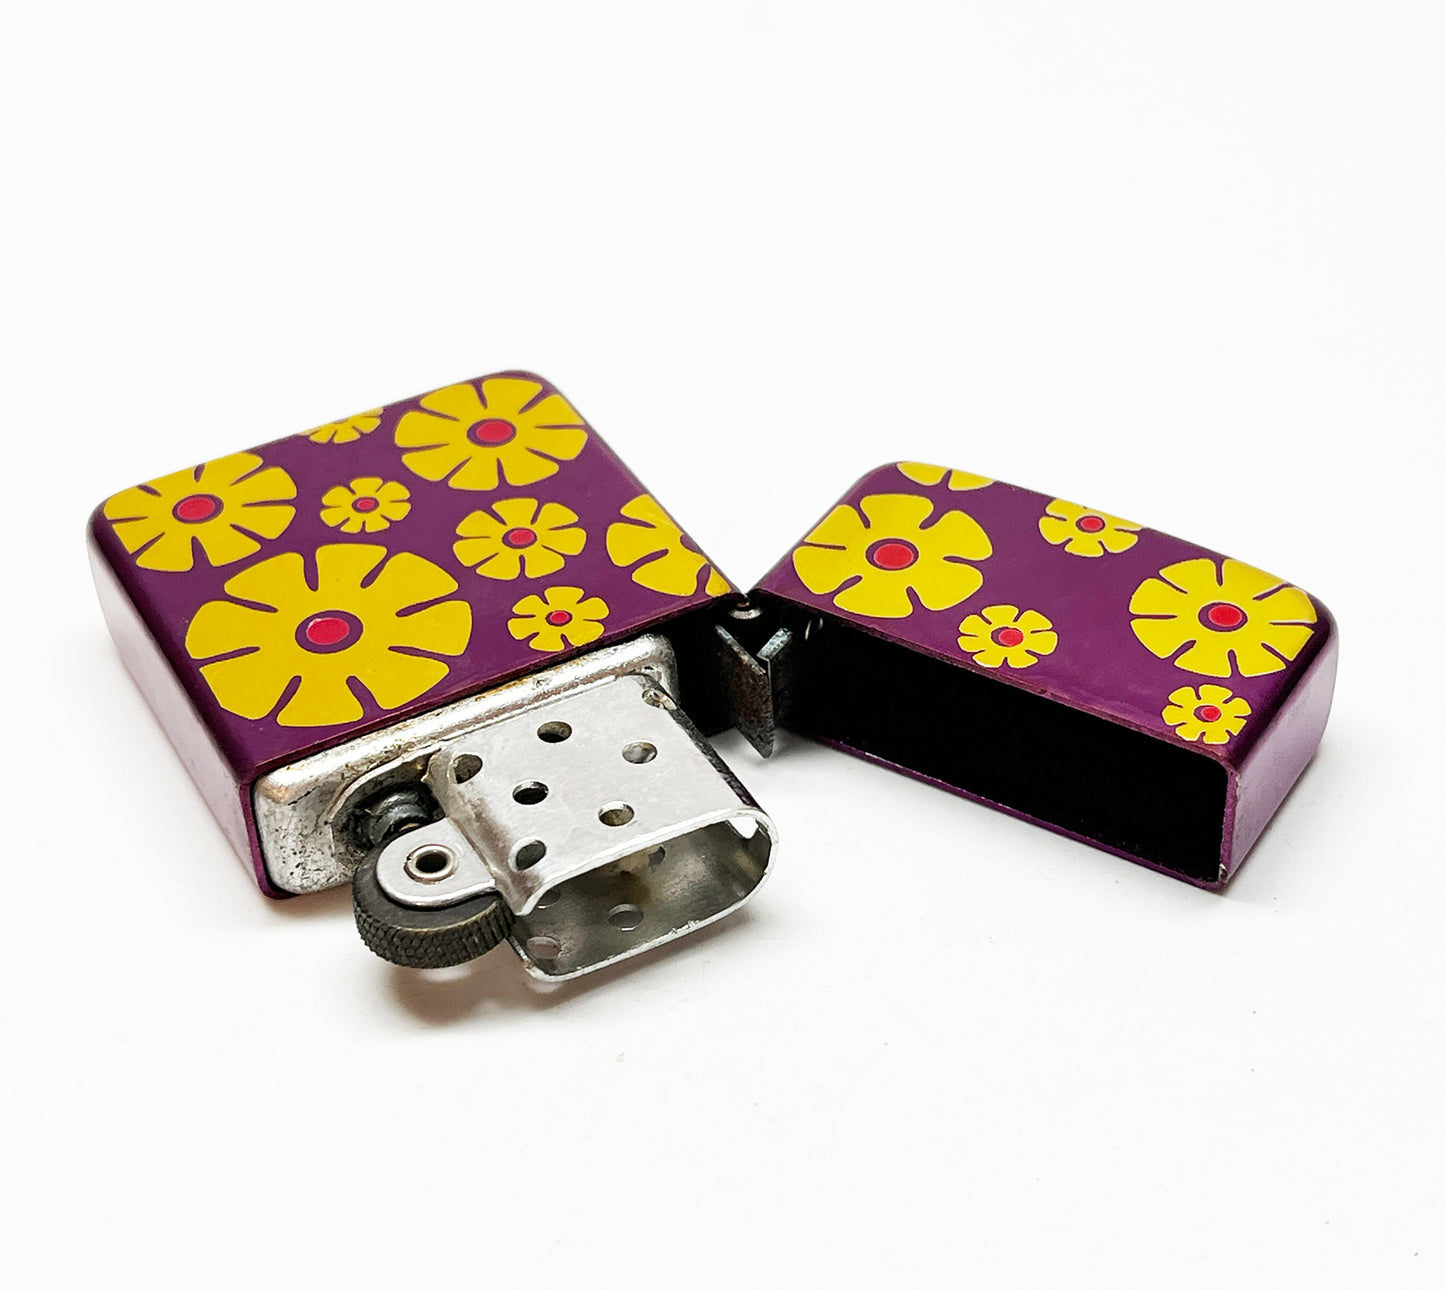 1960s Hippie Era Purple Flower Power Lighter